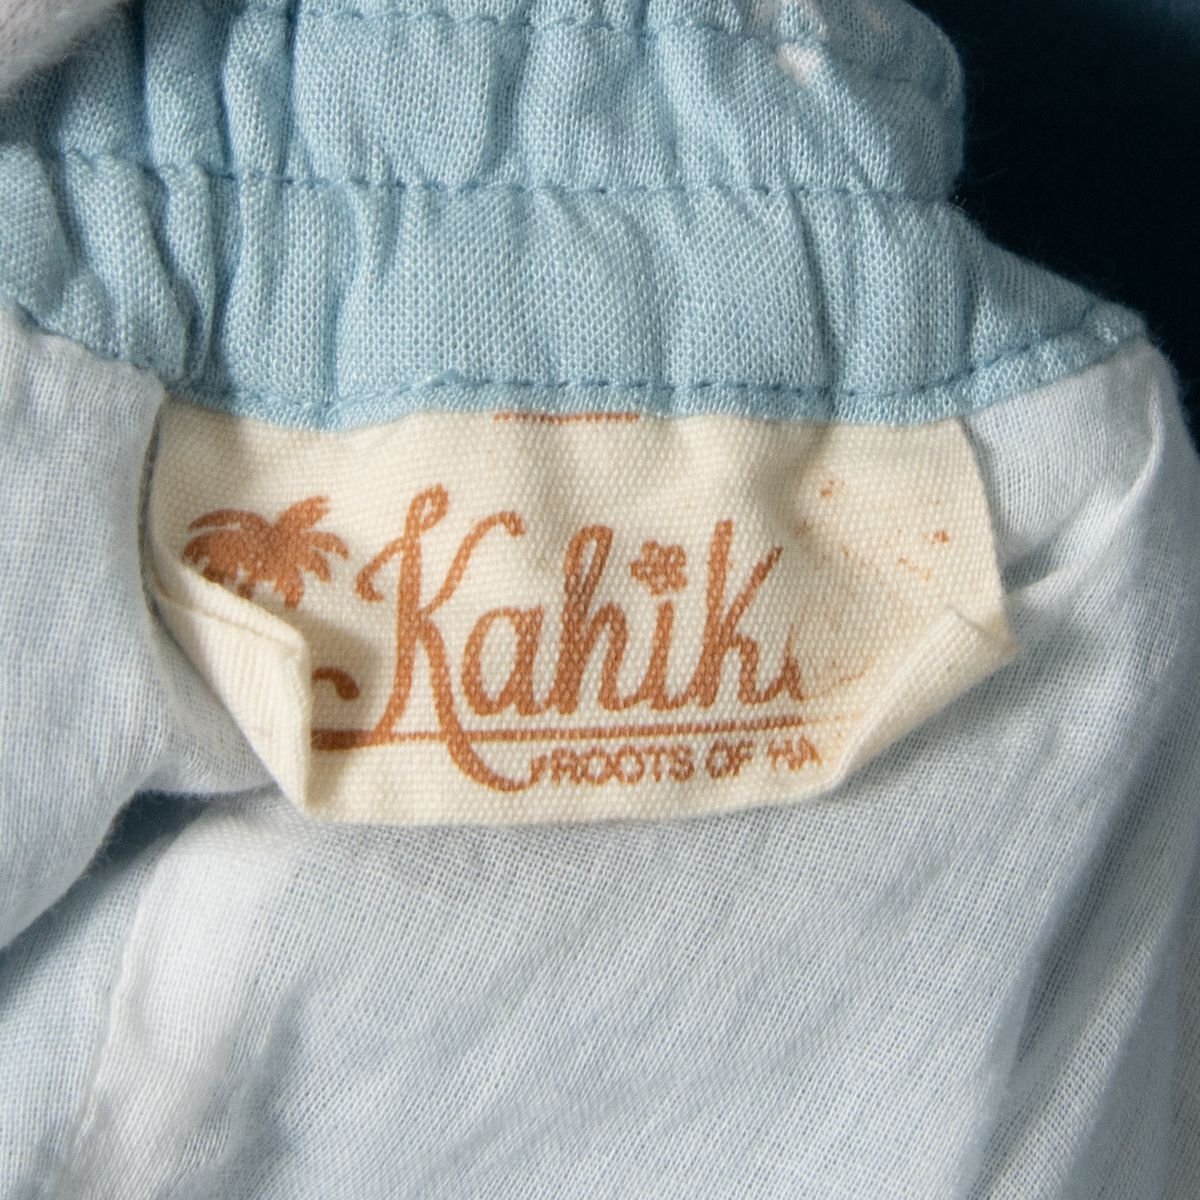 Kahikokahiko длинная юбка талия резина & шнур низ хлопок хлопок Hawaiian casual resort лето голубой бледно-голубой общий рисунок 